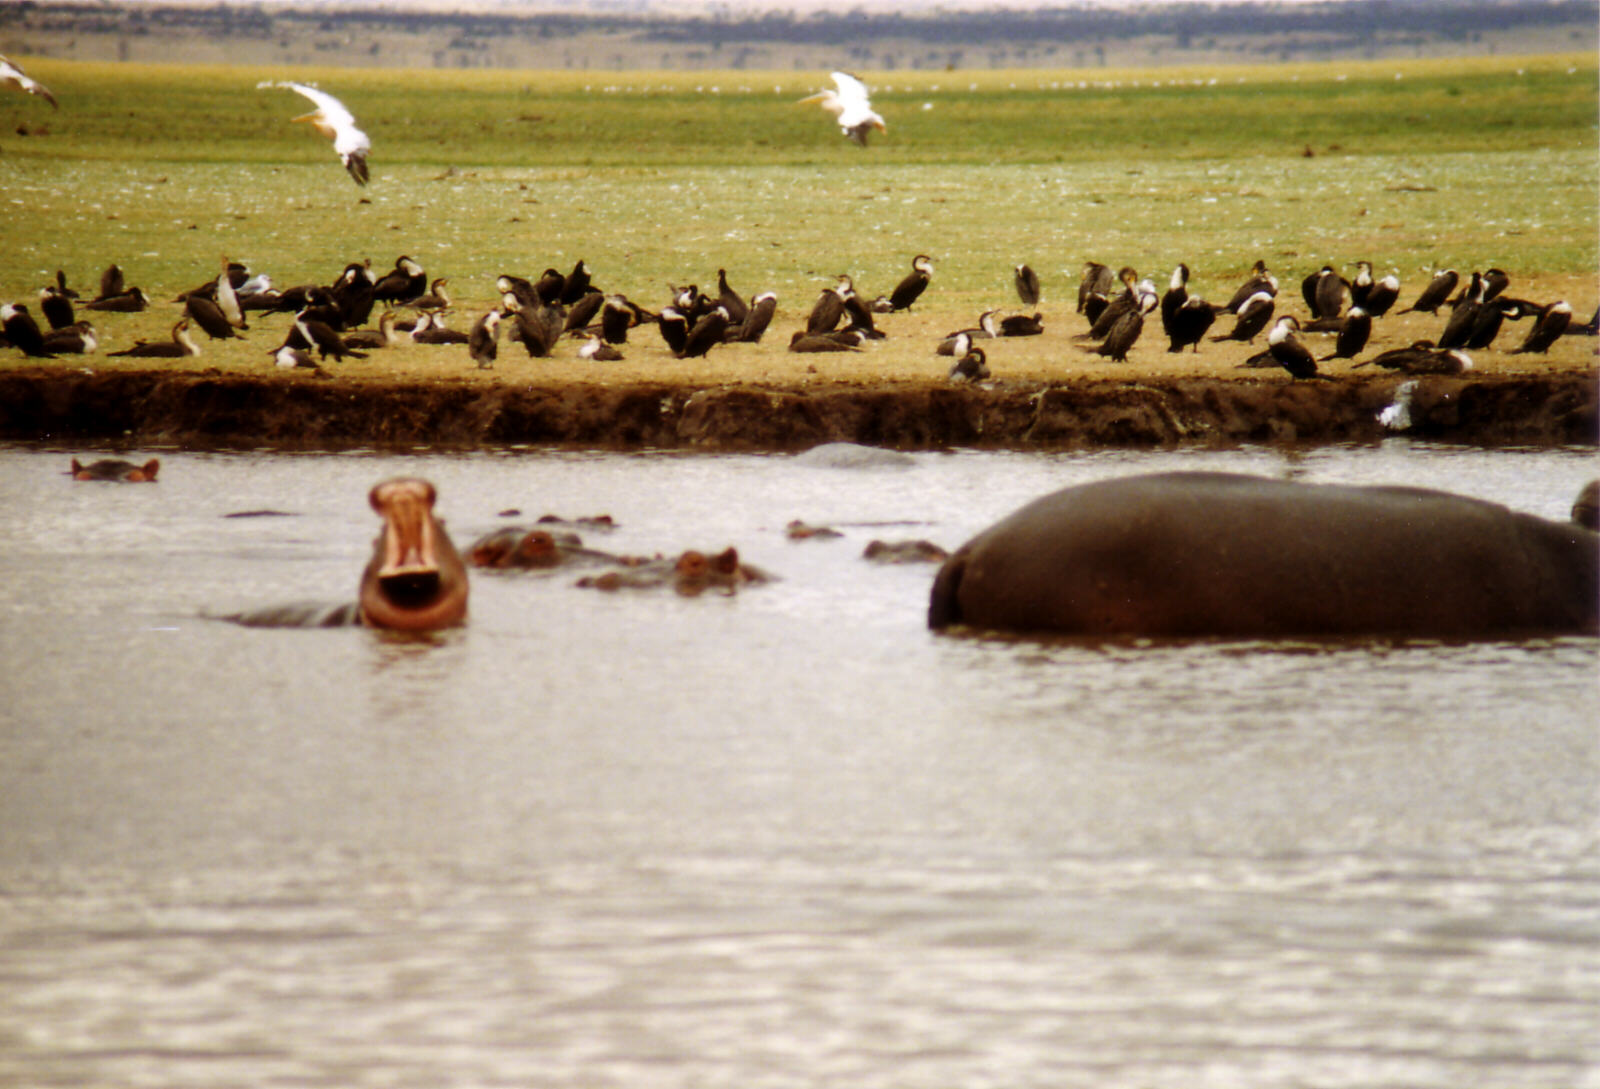 Hippos in Lake Manyara national park, Tanzania